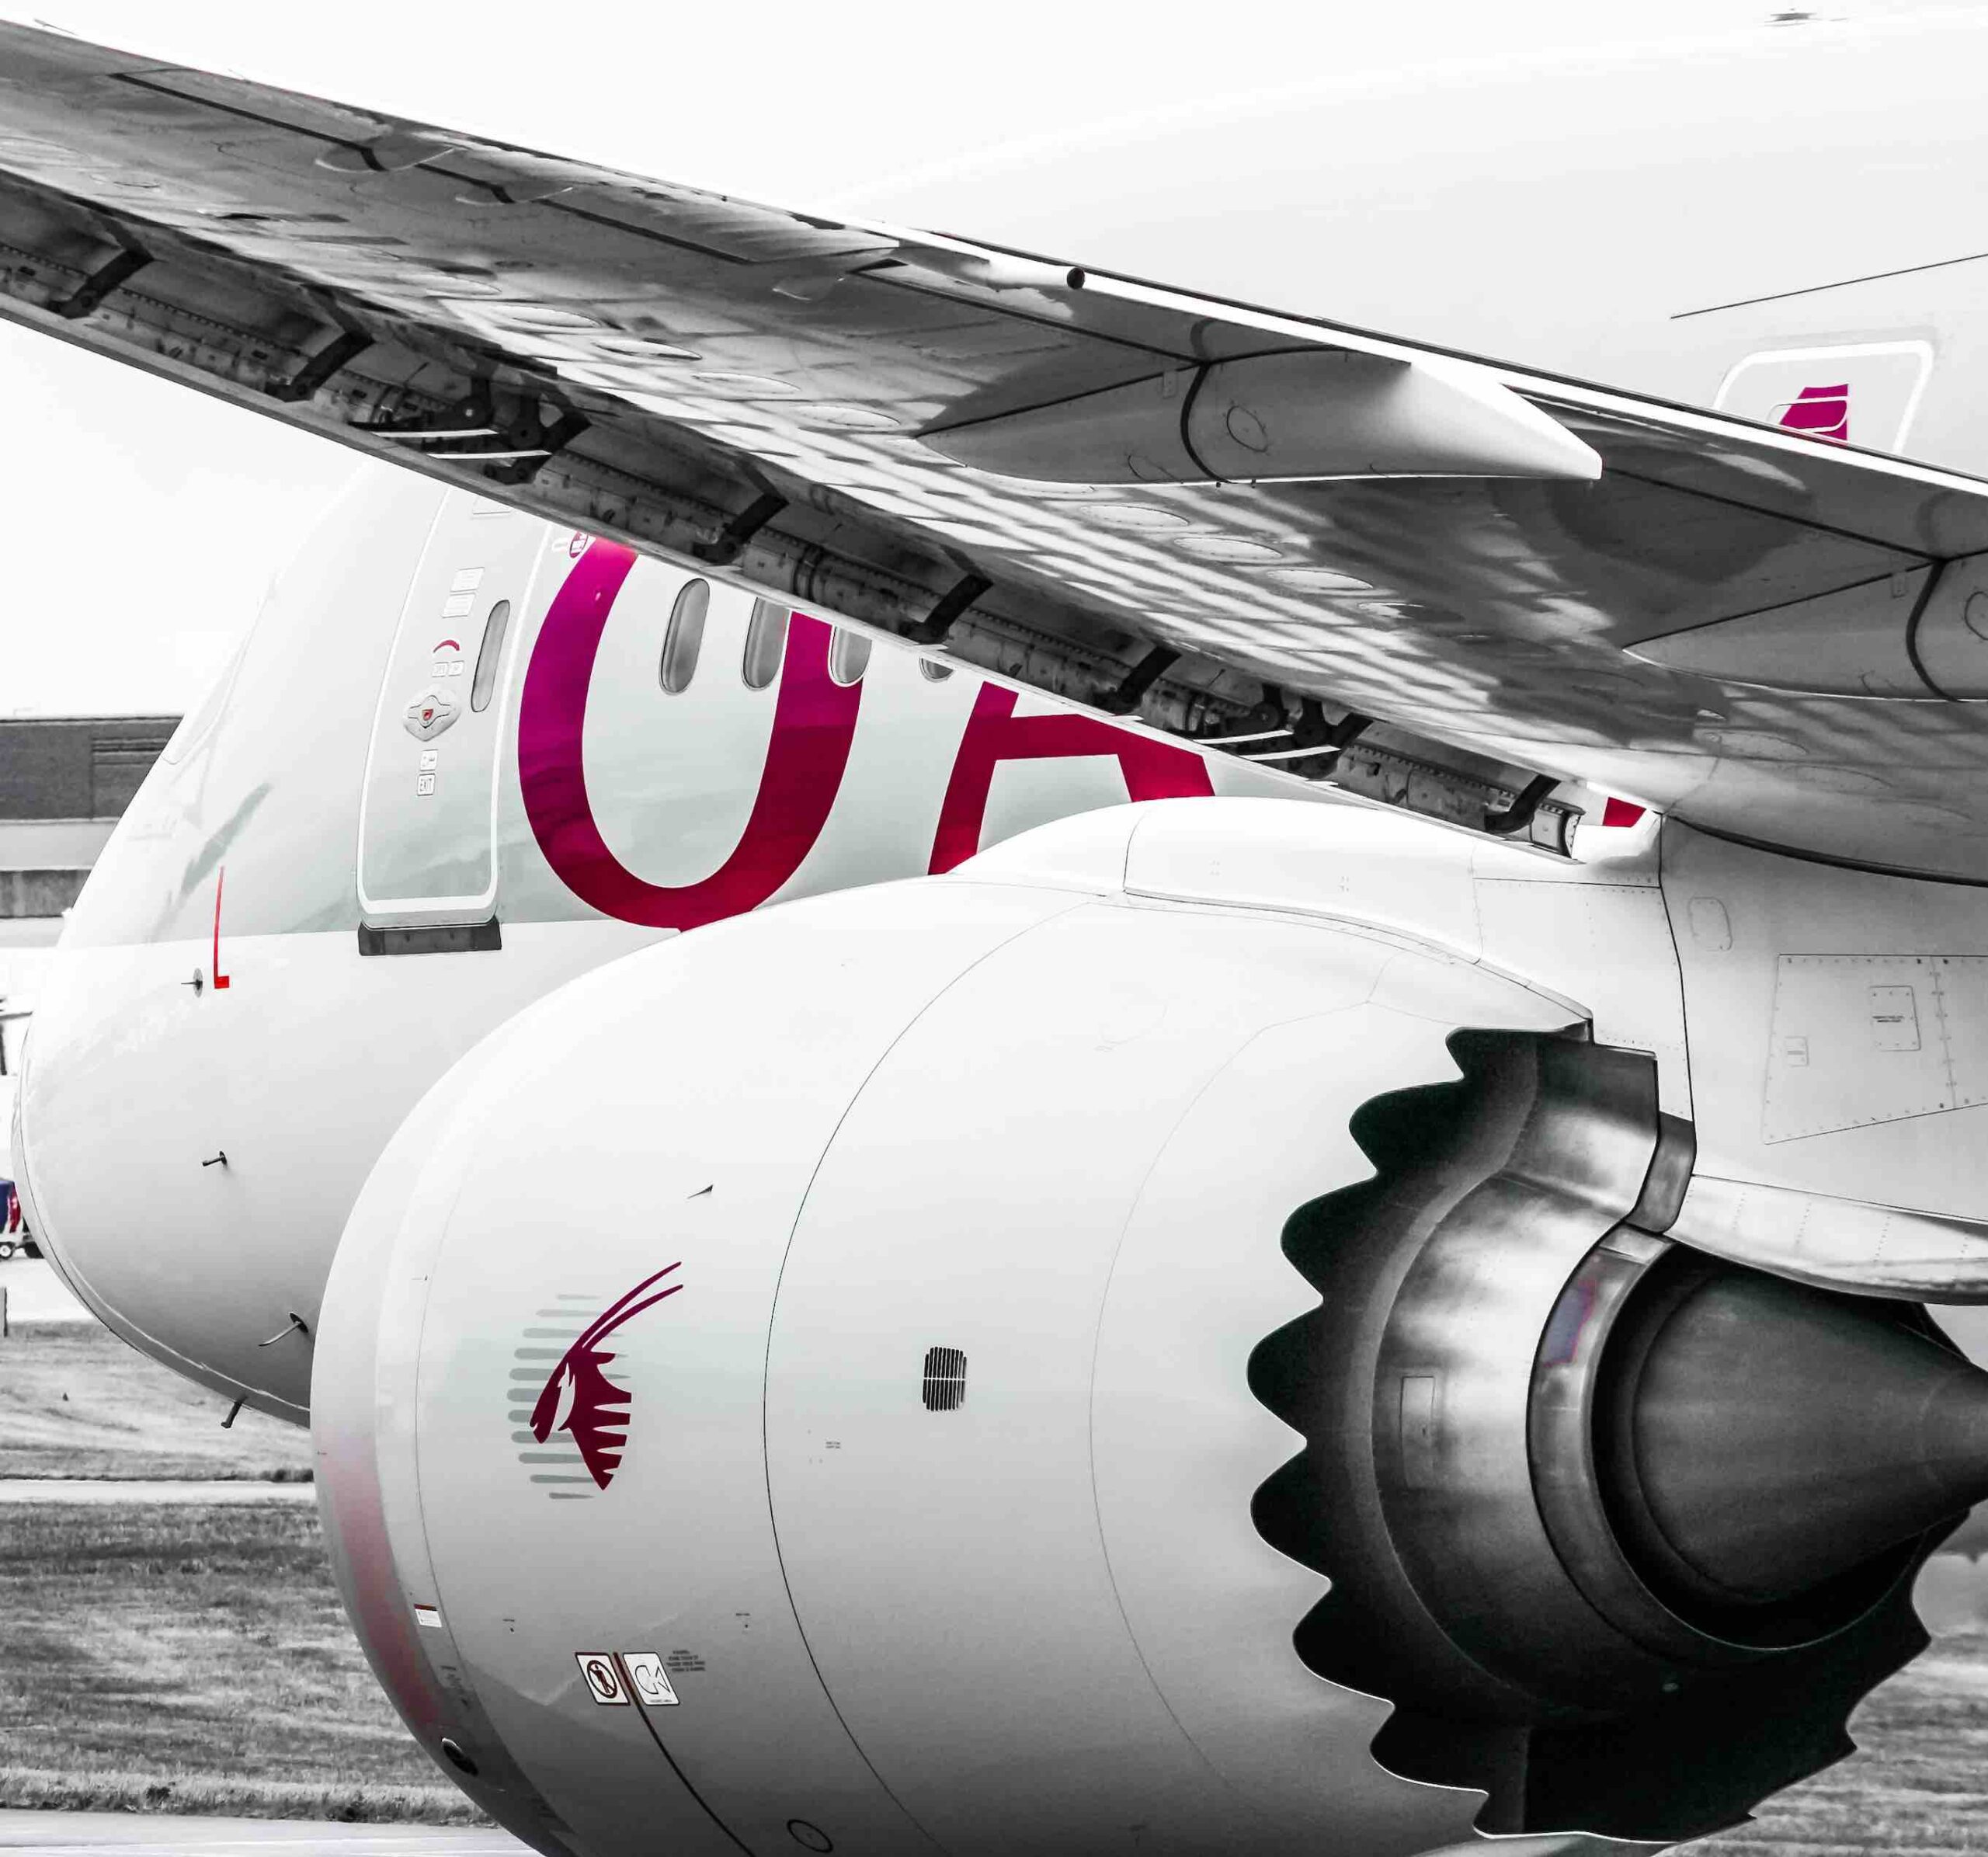 Qatar Airways i SpaceX: Podróże z internetem przyszłości ciekawostki współpraca, Usługi lotnicze, technologia, szybki internet, Starlink, SpaceX, Sektor lotniczy, Qatar Airways, pasażerowie, konkurencja, komunikacja, Komfort podróży, Internet na pokładzie, innowacje, dostęp do internetu, digitalizacja  Qatar Airways i SpaceX partnerują, by zapewnić pasażerom szybki internet na pokładzie, z technologią Starlink, bez dodatkowych opłat. Jest to świetna wiadomość. qatar 1 scaled